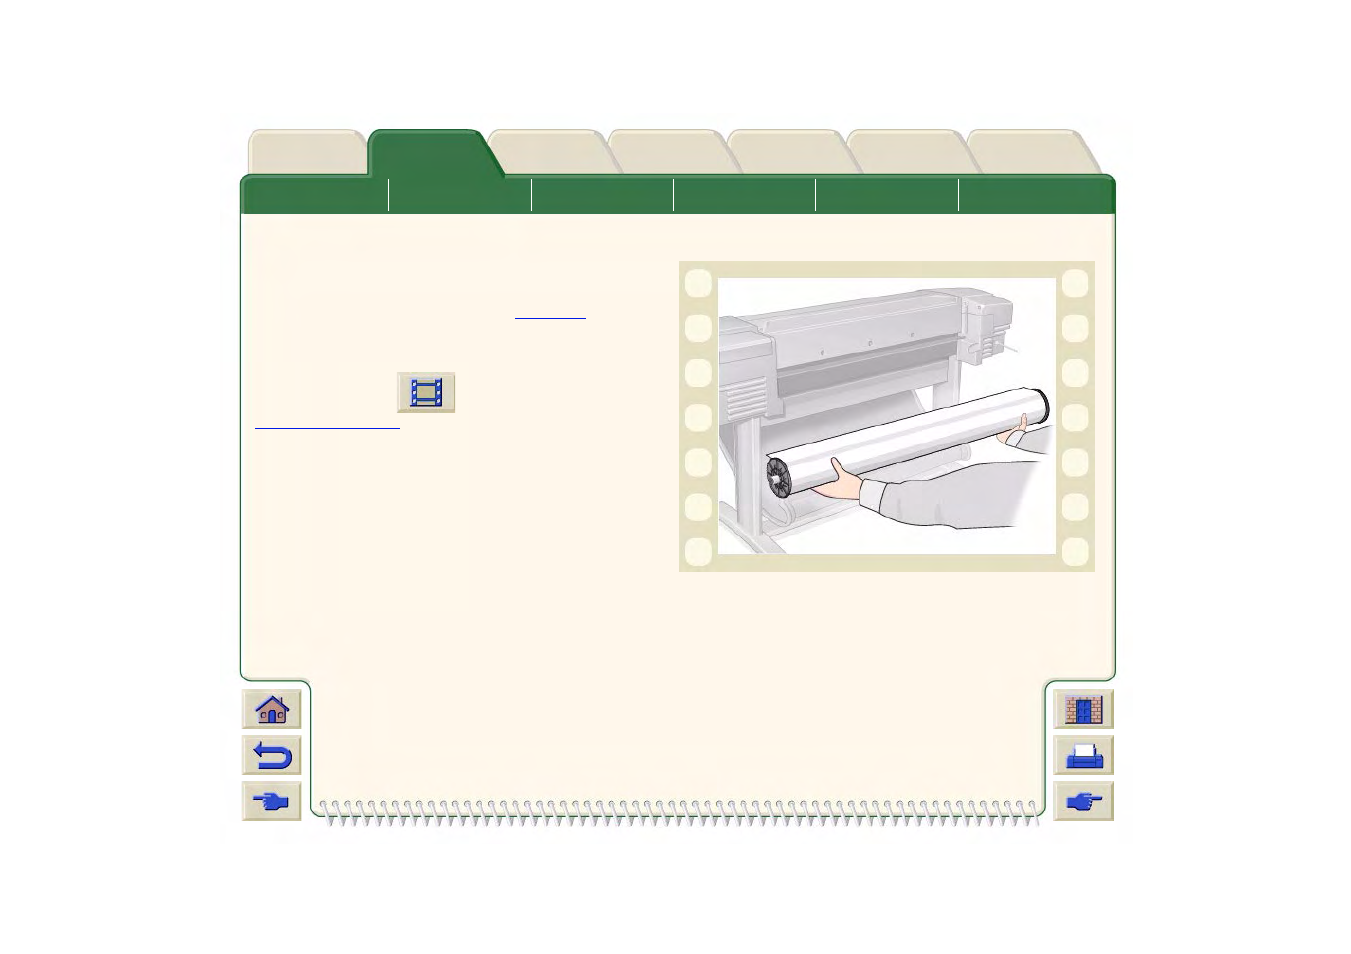 Retrait d’un support en rouleau de l’imprimante | HP DesignJet 500 Manuel d'utilisation | Page 39 / 227